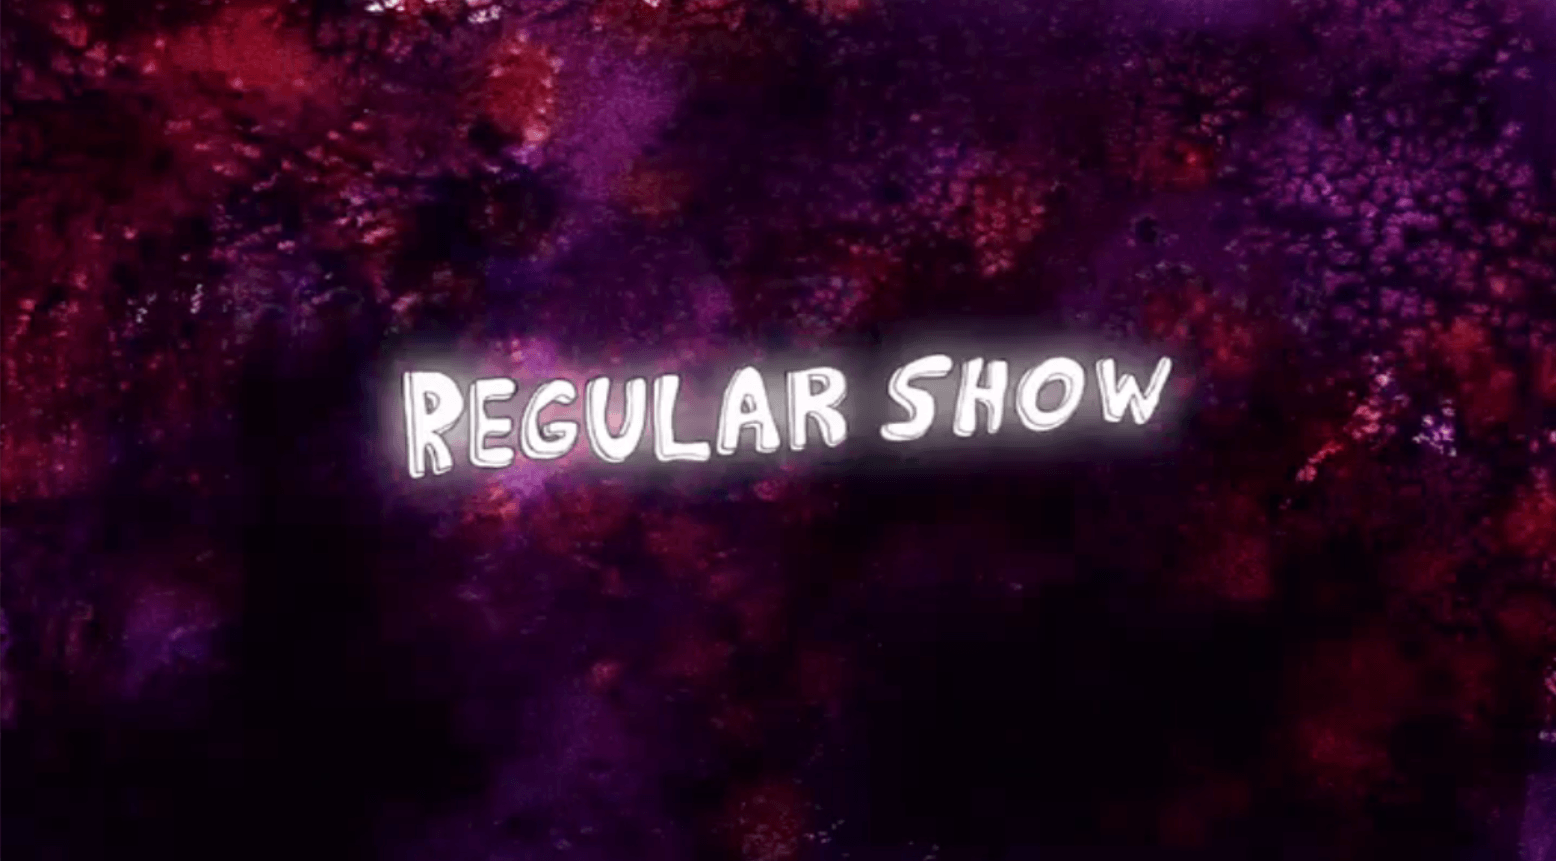 Regular Show - Tham gia vào một cuộc phiêu lưu hài hước với bộ phim hoạt hình nổi tiếng \